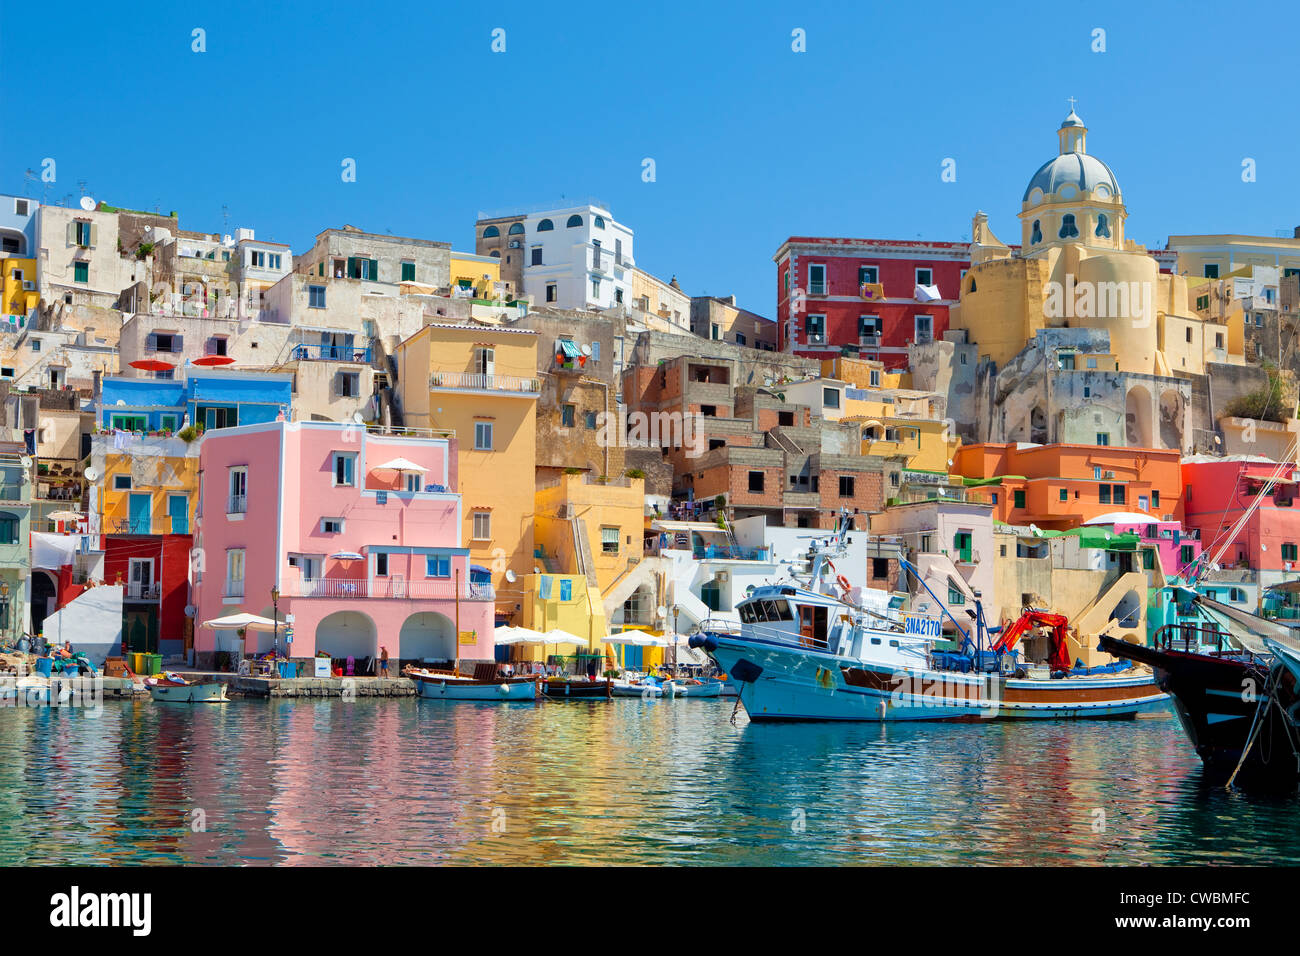 Marina Corricella, Procida Island, la Bahía de Nápoles, Campania, Italia Foto de stock